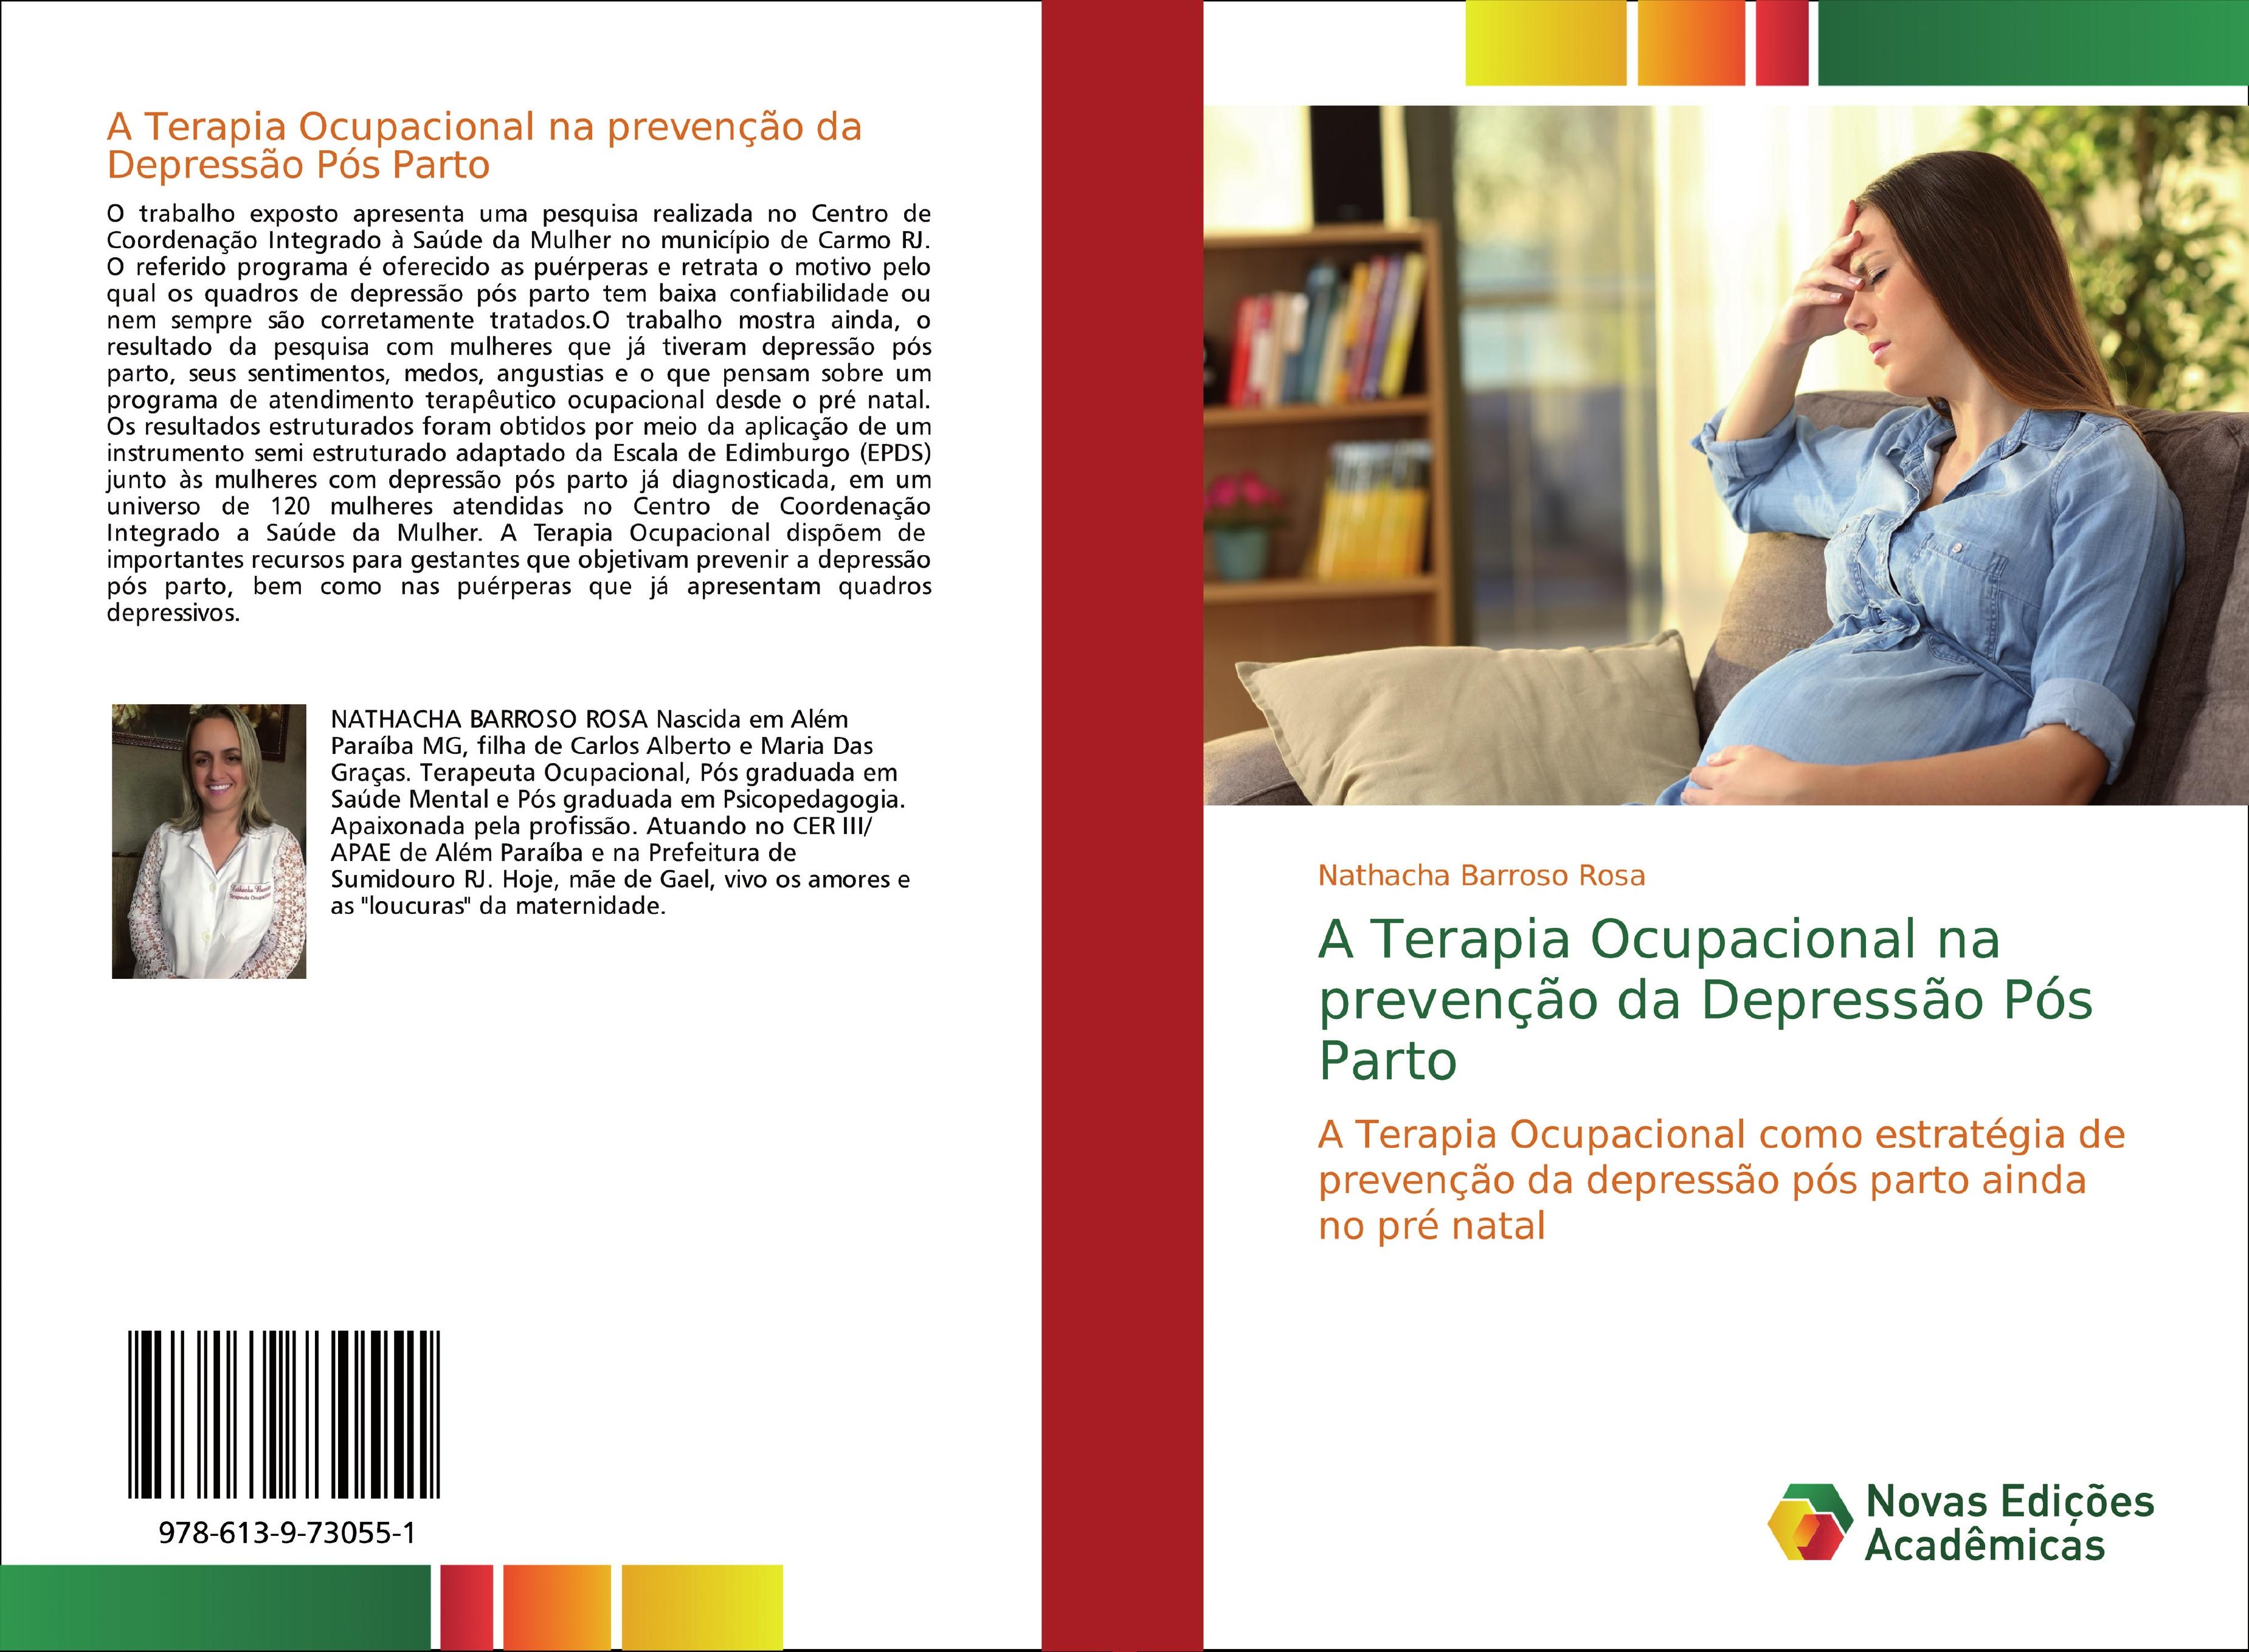 A Terapia Ocupacional na prevenção da Depressão Pós Parto: A Terapia Ocupacional como estratégia de prevenção da depressão pós parto ainda no pré natal